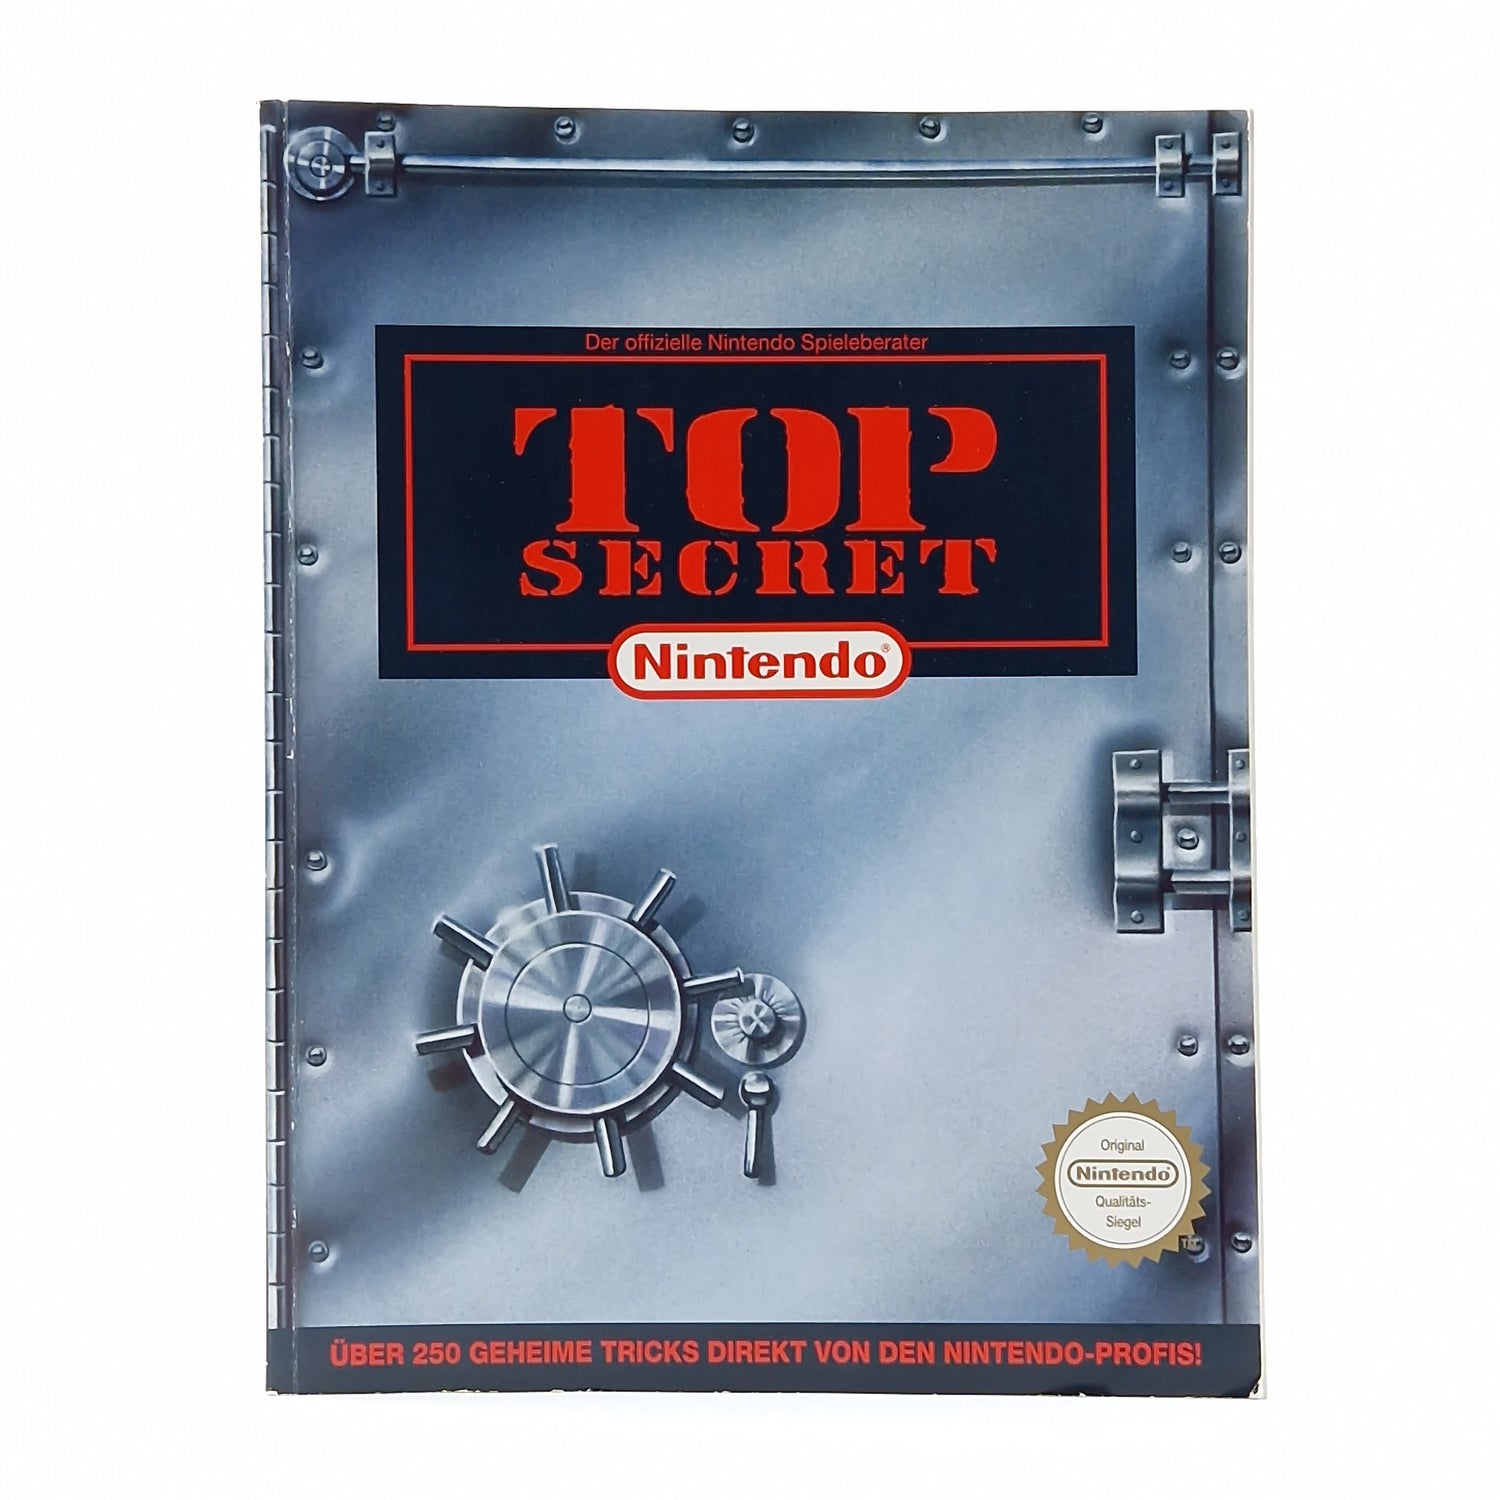 Der offizielle Nintendo Spieleberater - TOP SECRET - Lösungsbuch SNES Game Boy